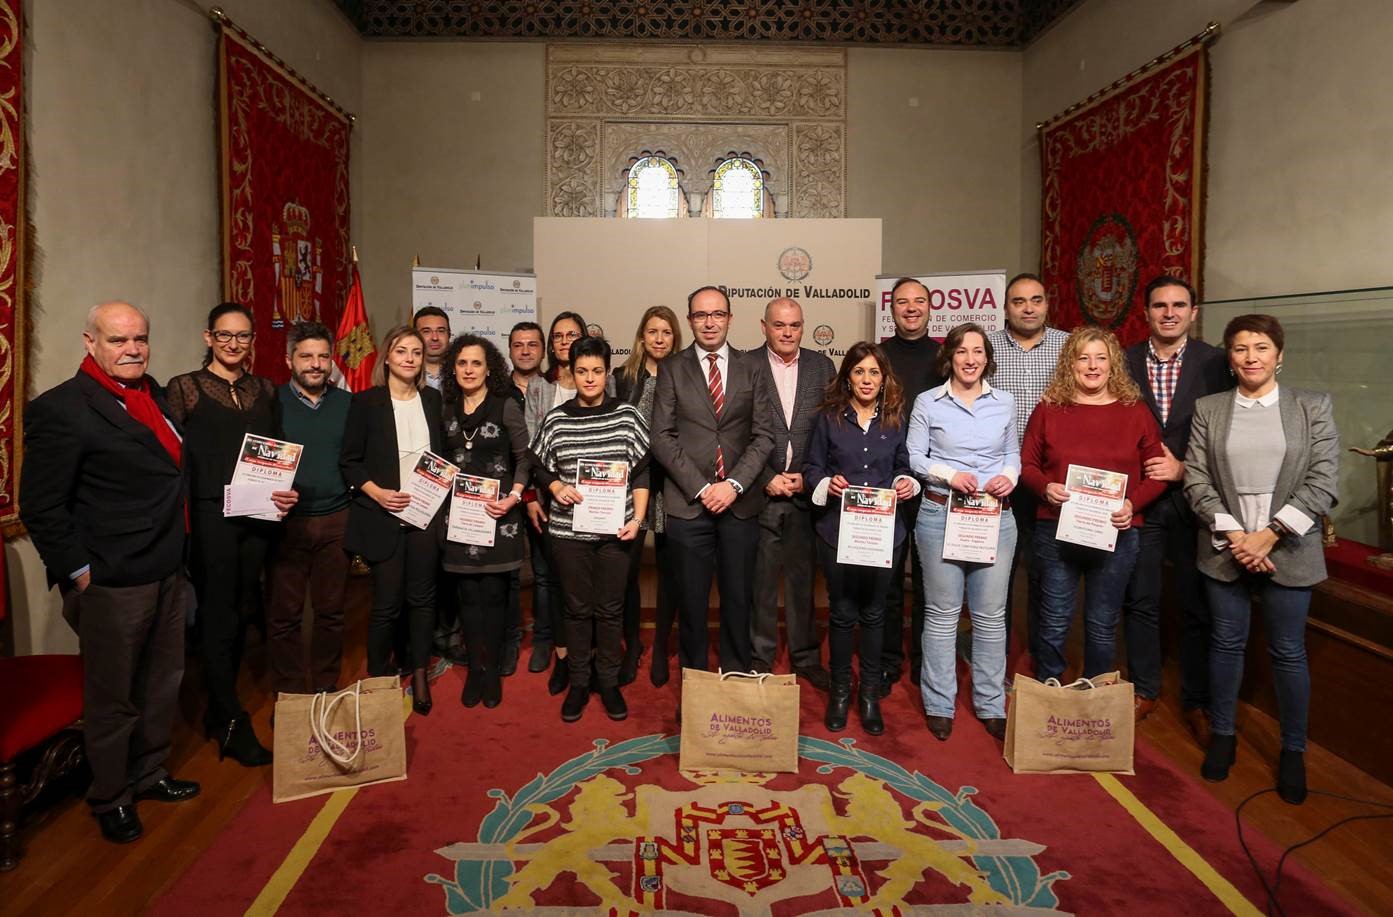 La Diputación de Valladolid y FECOSVA entregan sus premios del concurso de escaparates de navidad